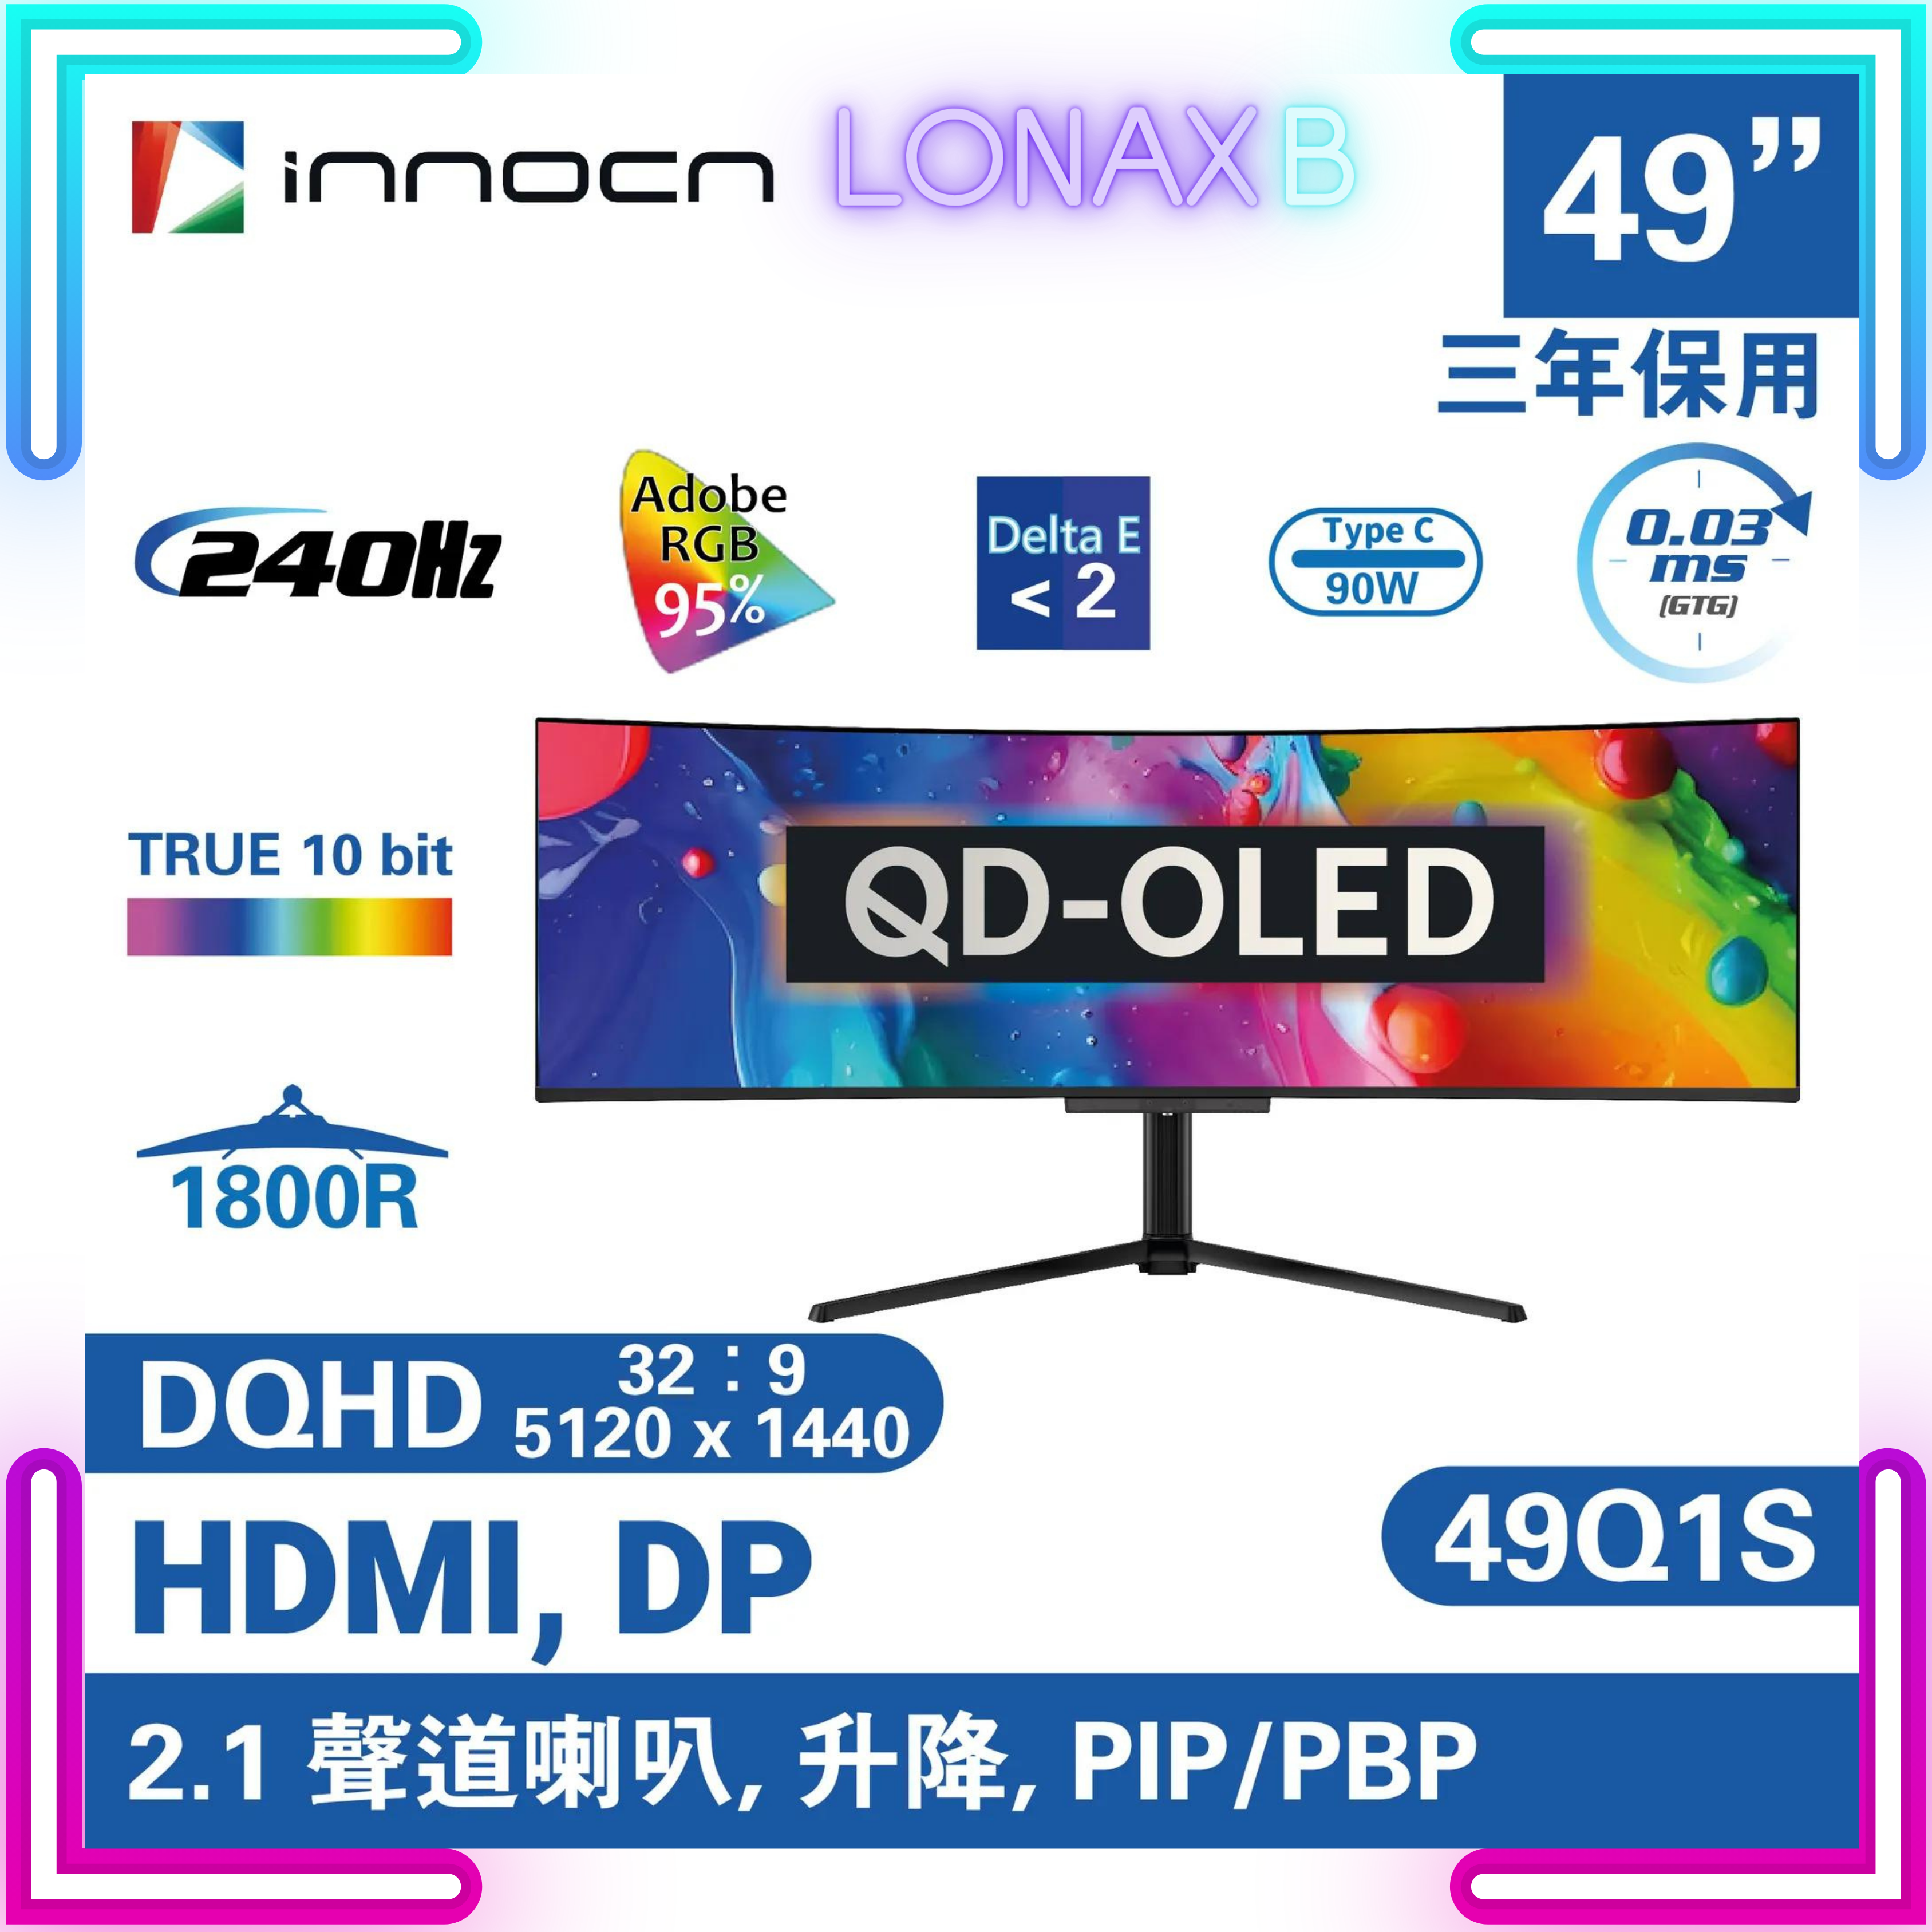 【量子點 QD-OLED】INNOCN 49Q1S QD-OLED 曲面電競顯示器 (49 吋 / DQHD / 240Hz / 0.03ms / QD-OLED / Type-C 90W / 99% DCI-P3 / HDMI 2.1 / True 10 bits、HDR / 內置2.1聲道喇叭) - 5120 x 1440   3年上門保養